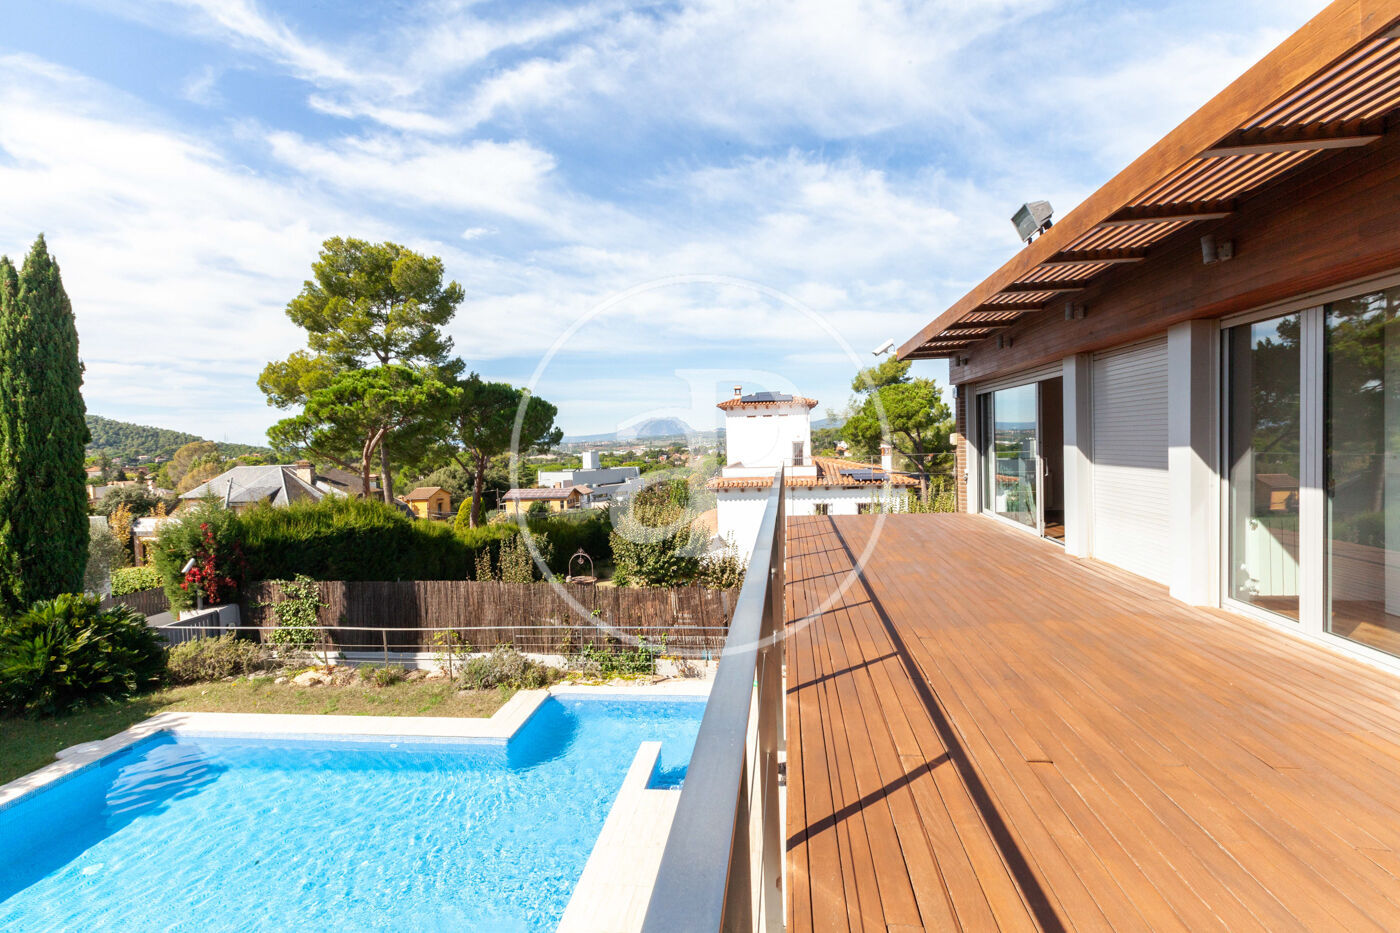 Casa unifamiliar amueblada en alquiler de cinco habitaciones con piscina en Valldoreix